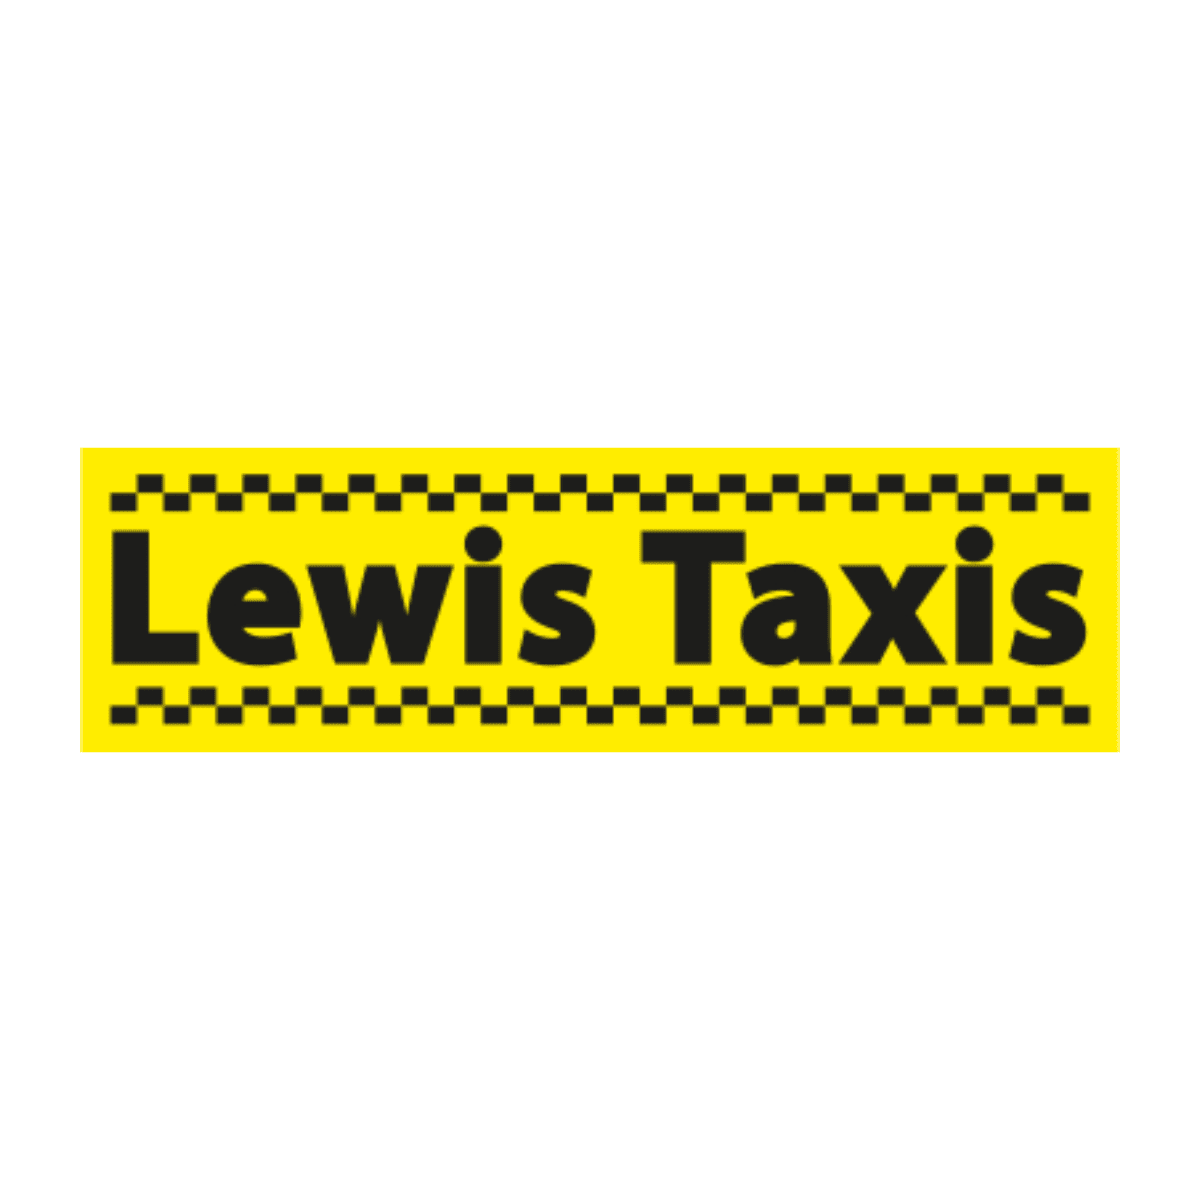 Lewis Taxis - Coventry, West Midlands CV6 5AJ - 02476 666666 | ShowMeLocal.com